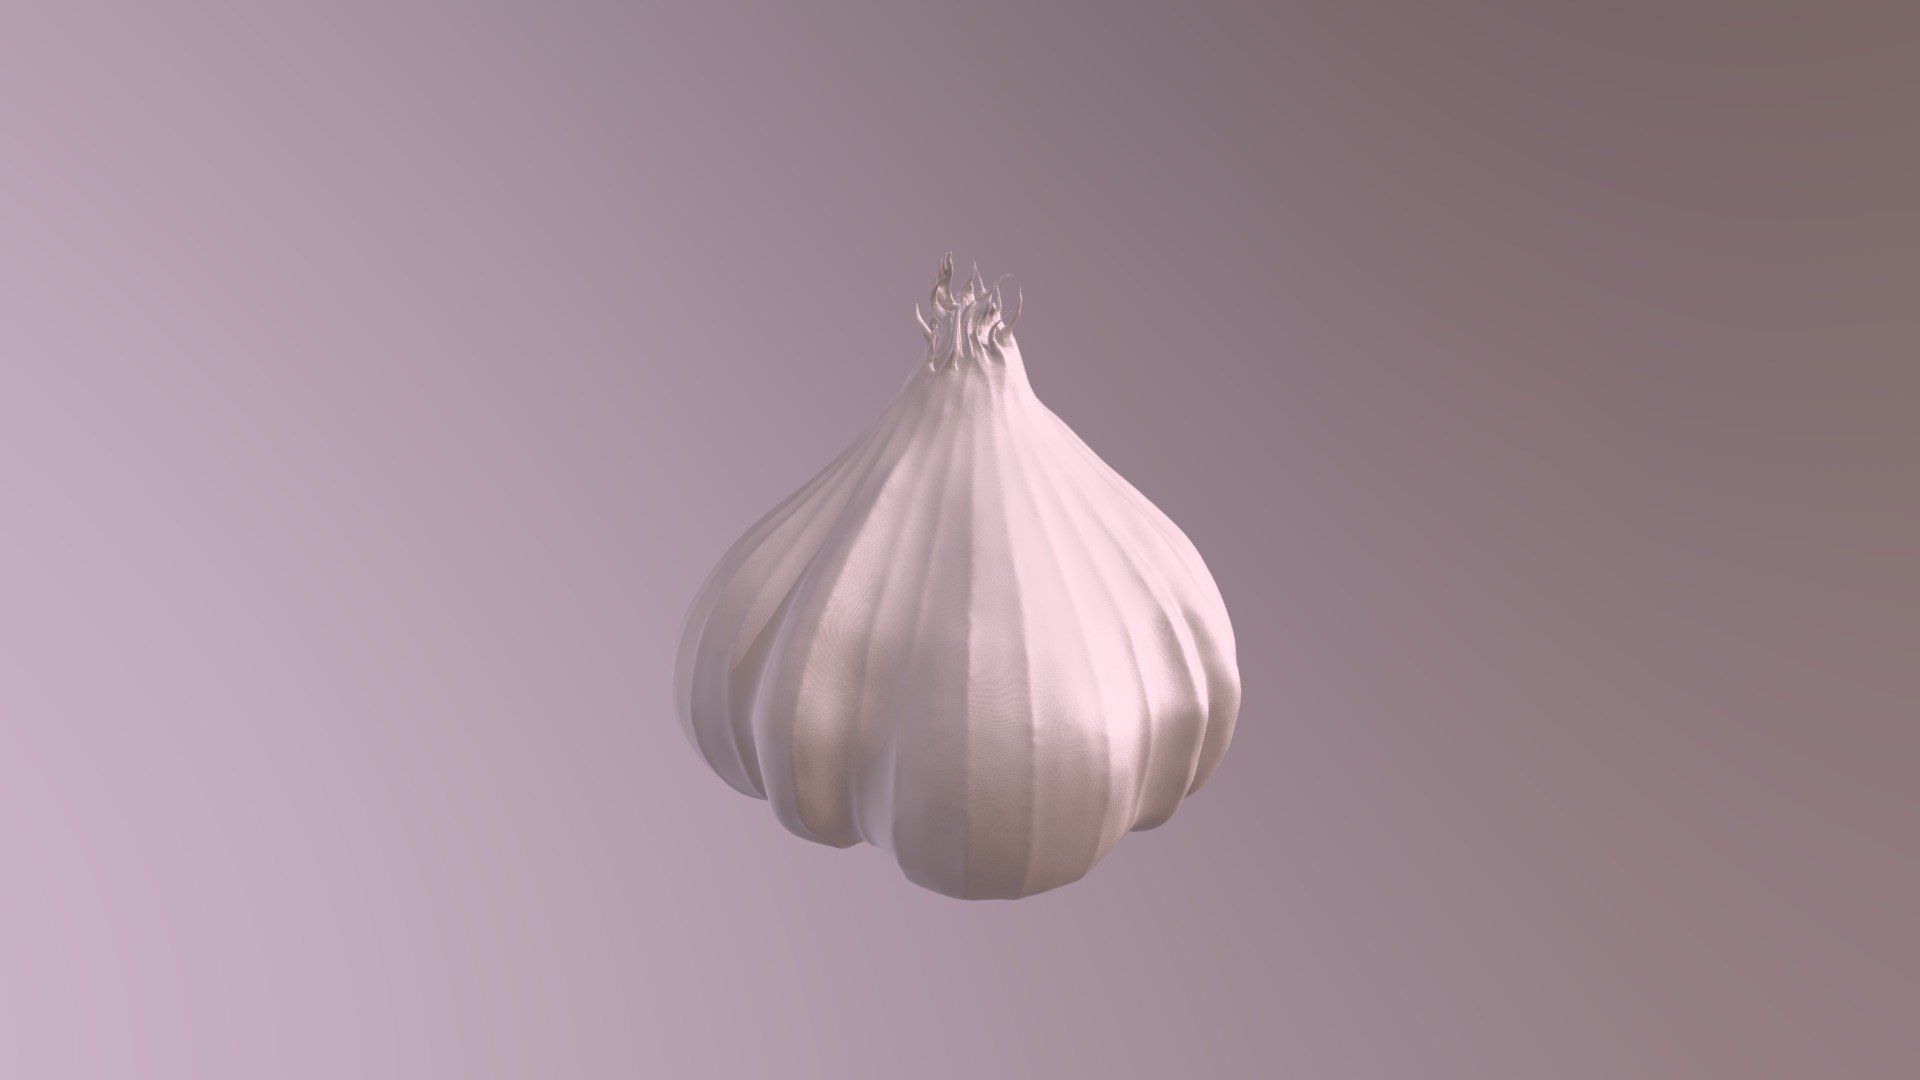 Garlic sculpt